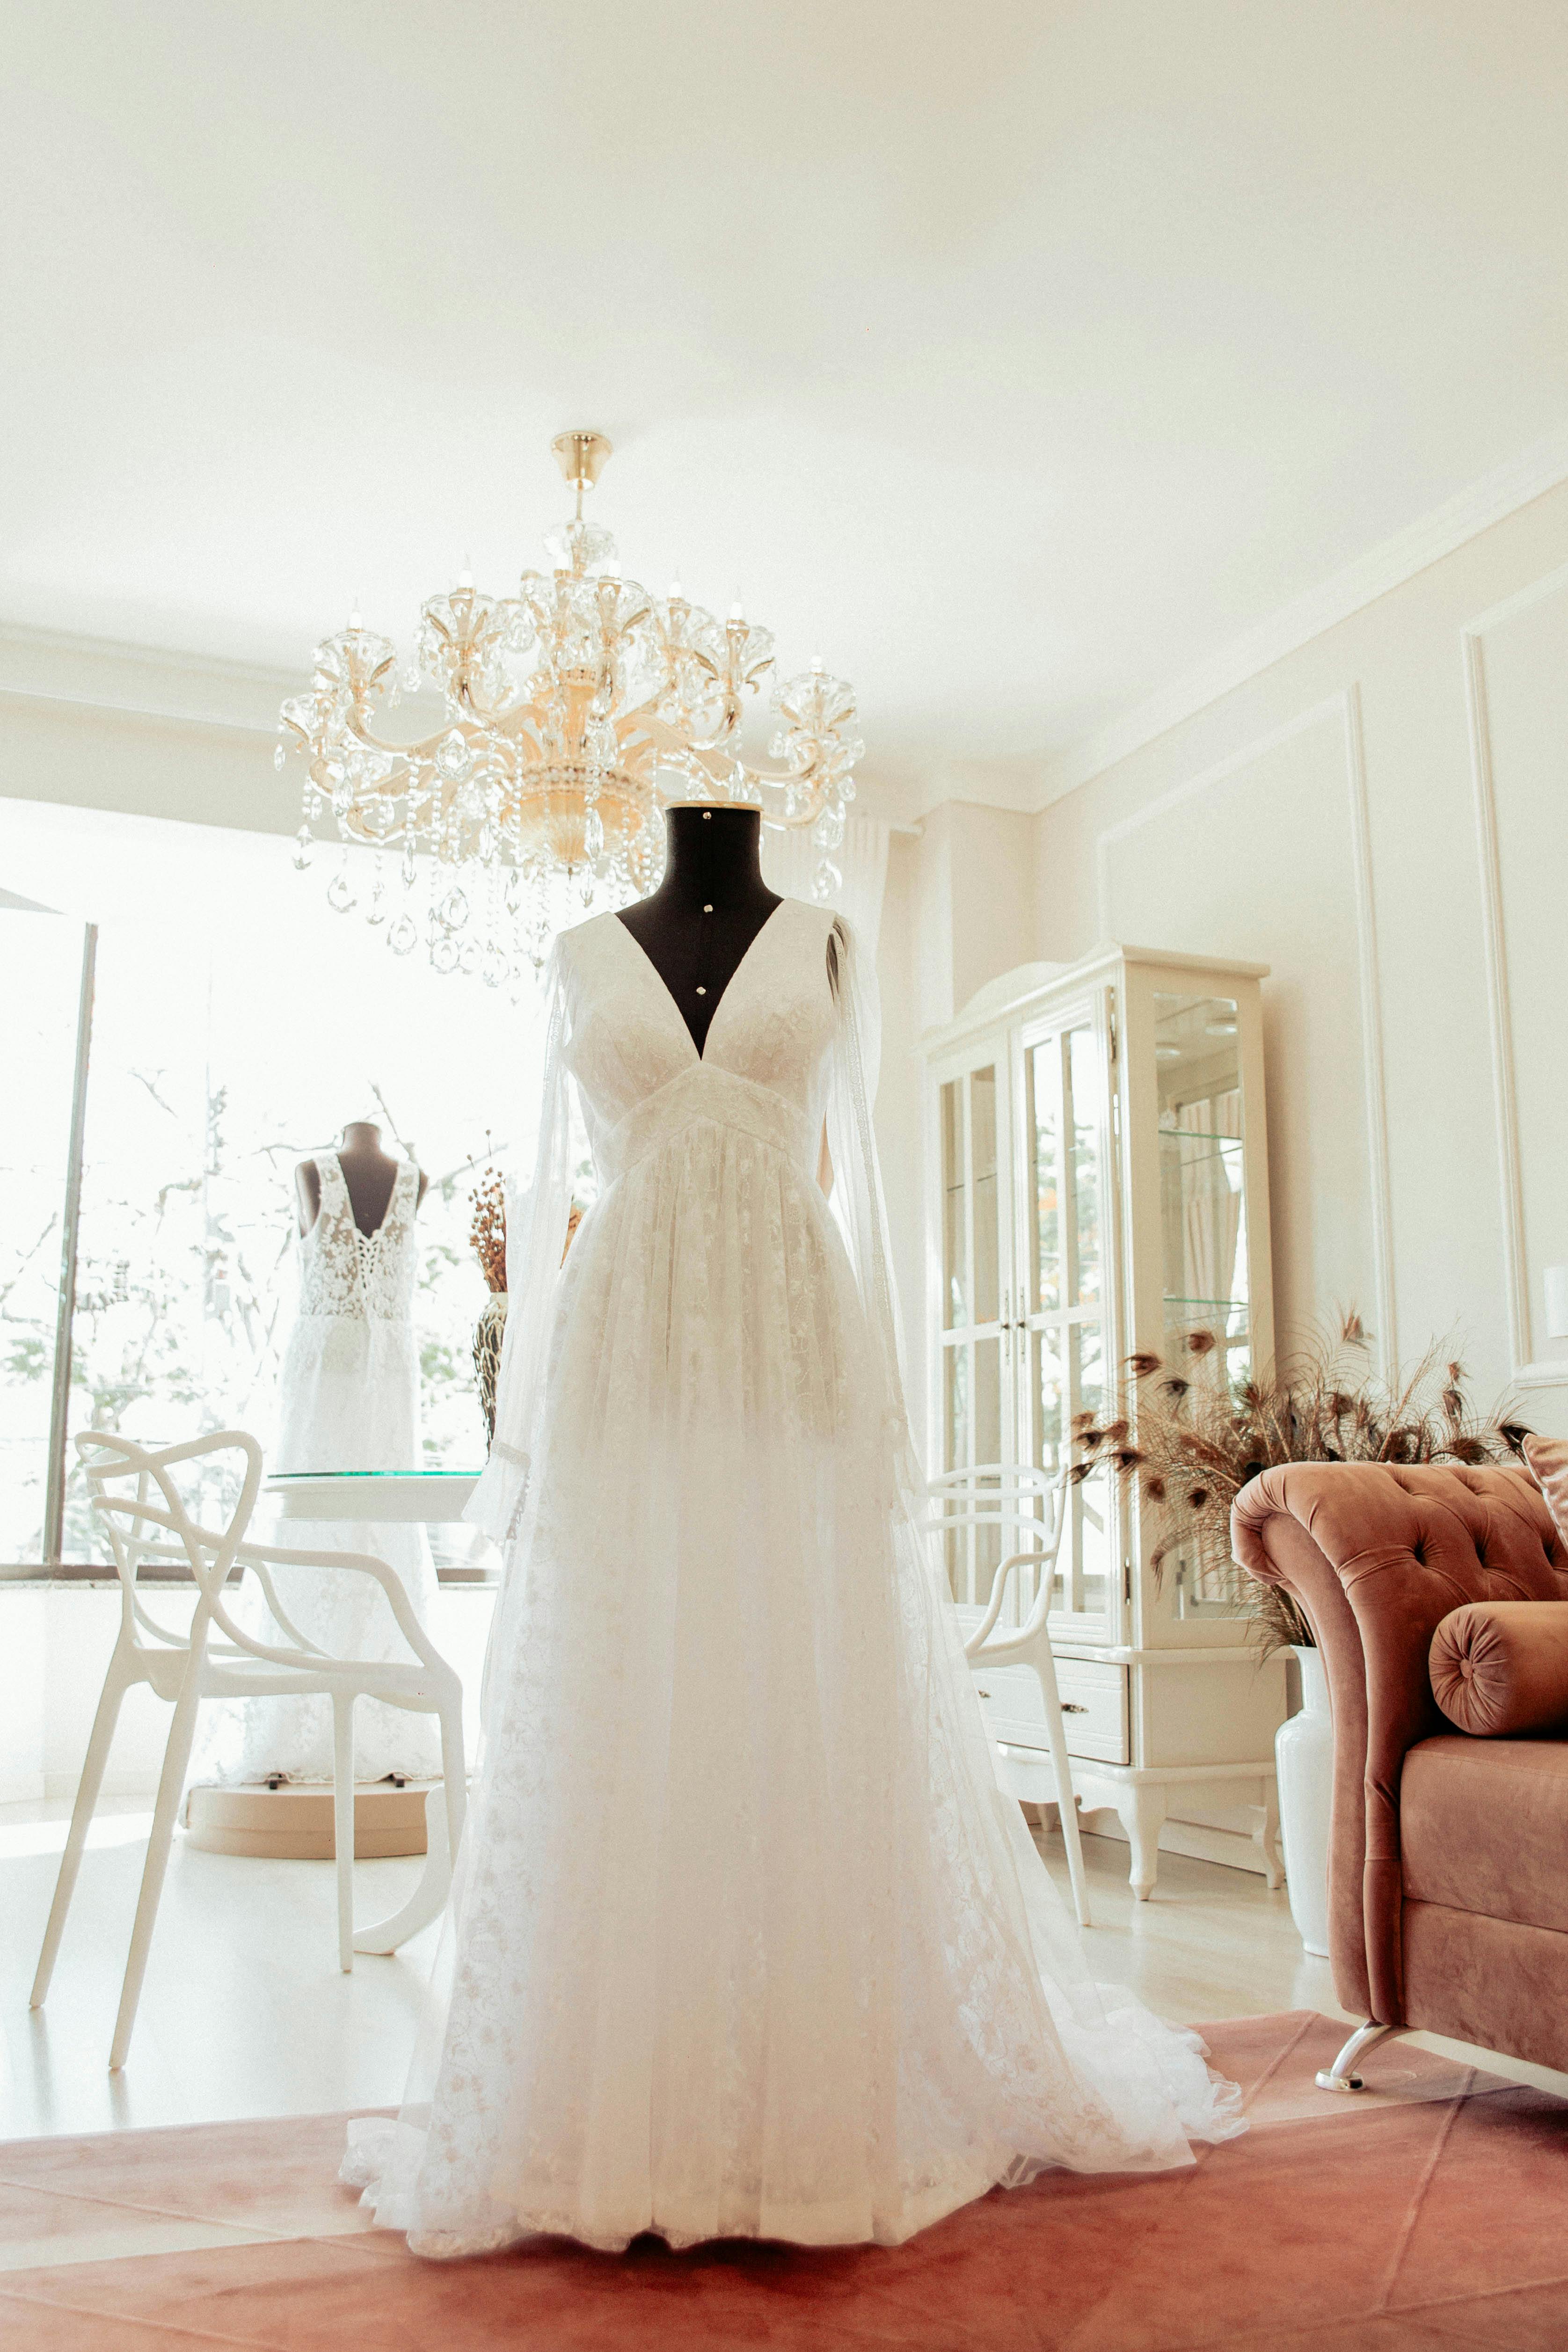 Gratis lagerfoto af brudekjole, elegant, kjole, lavvinkelskud, lodret skud, mannequin, værelse